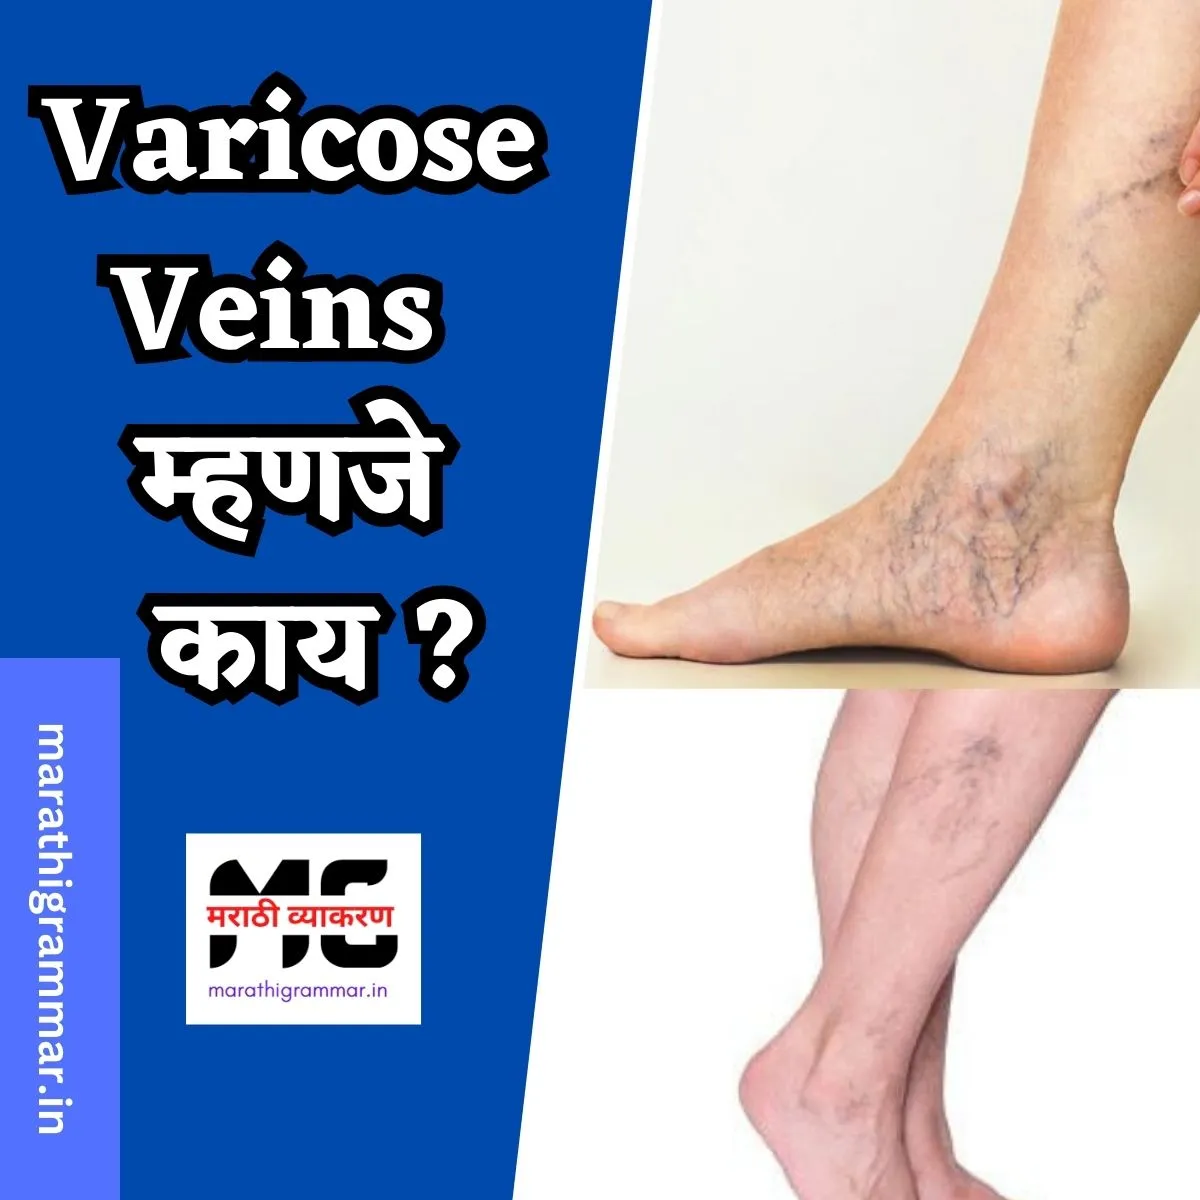 व्हेरिकोज व्हेन्स म्हणजे काय? | Varicose Veins in Marathi 